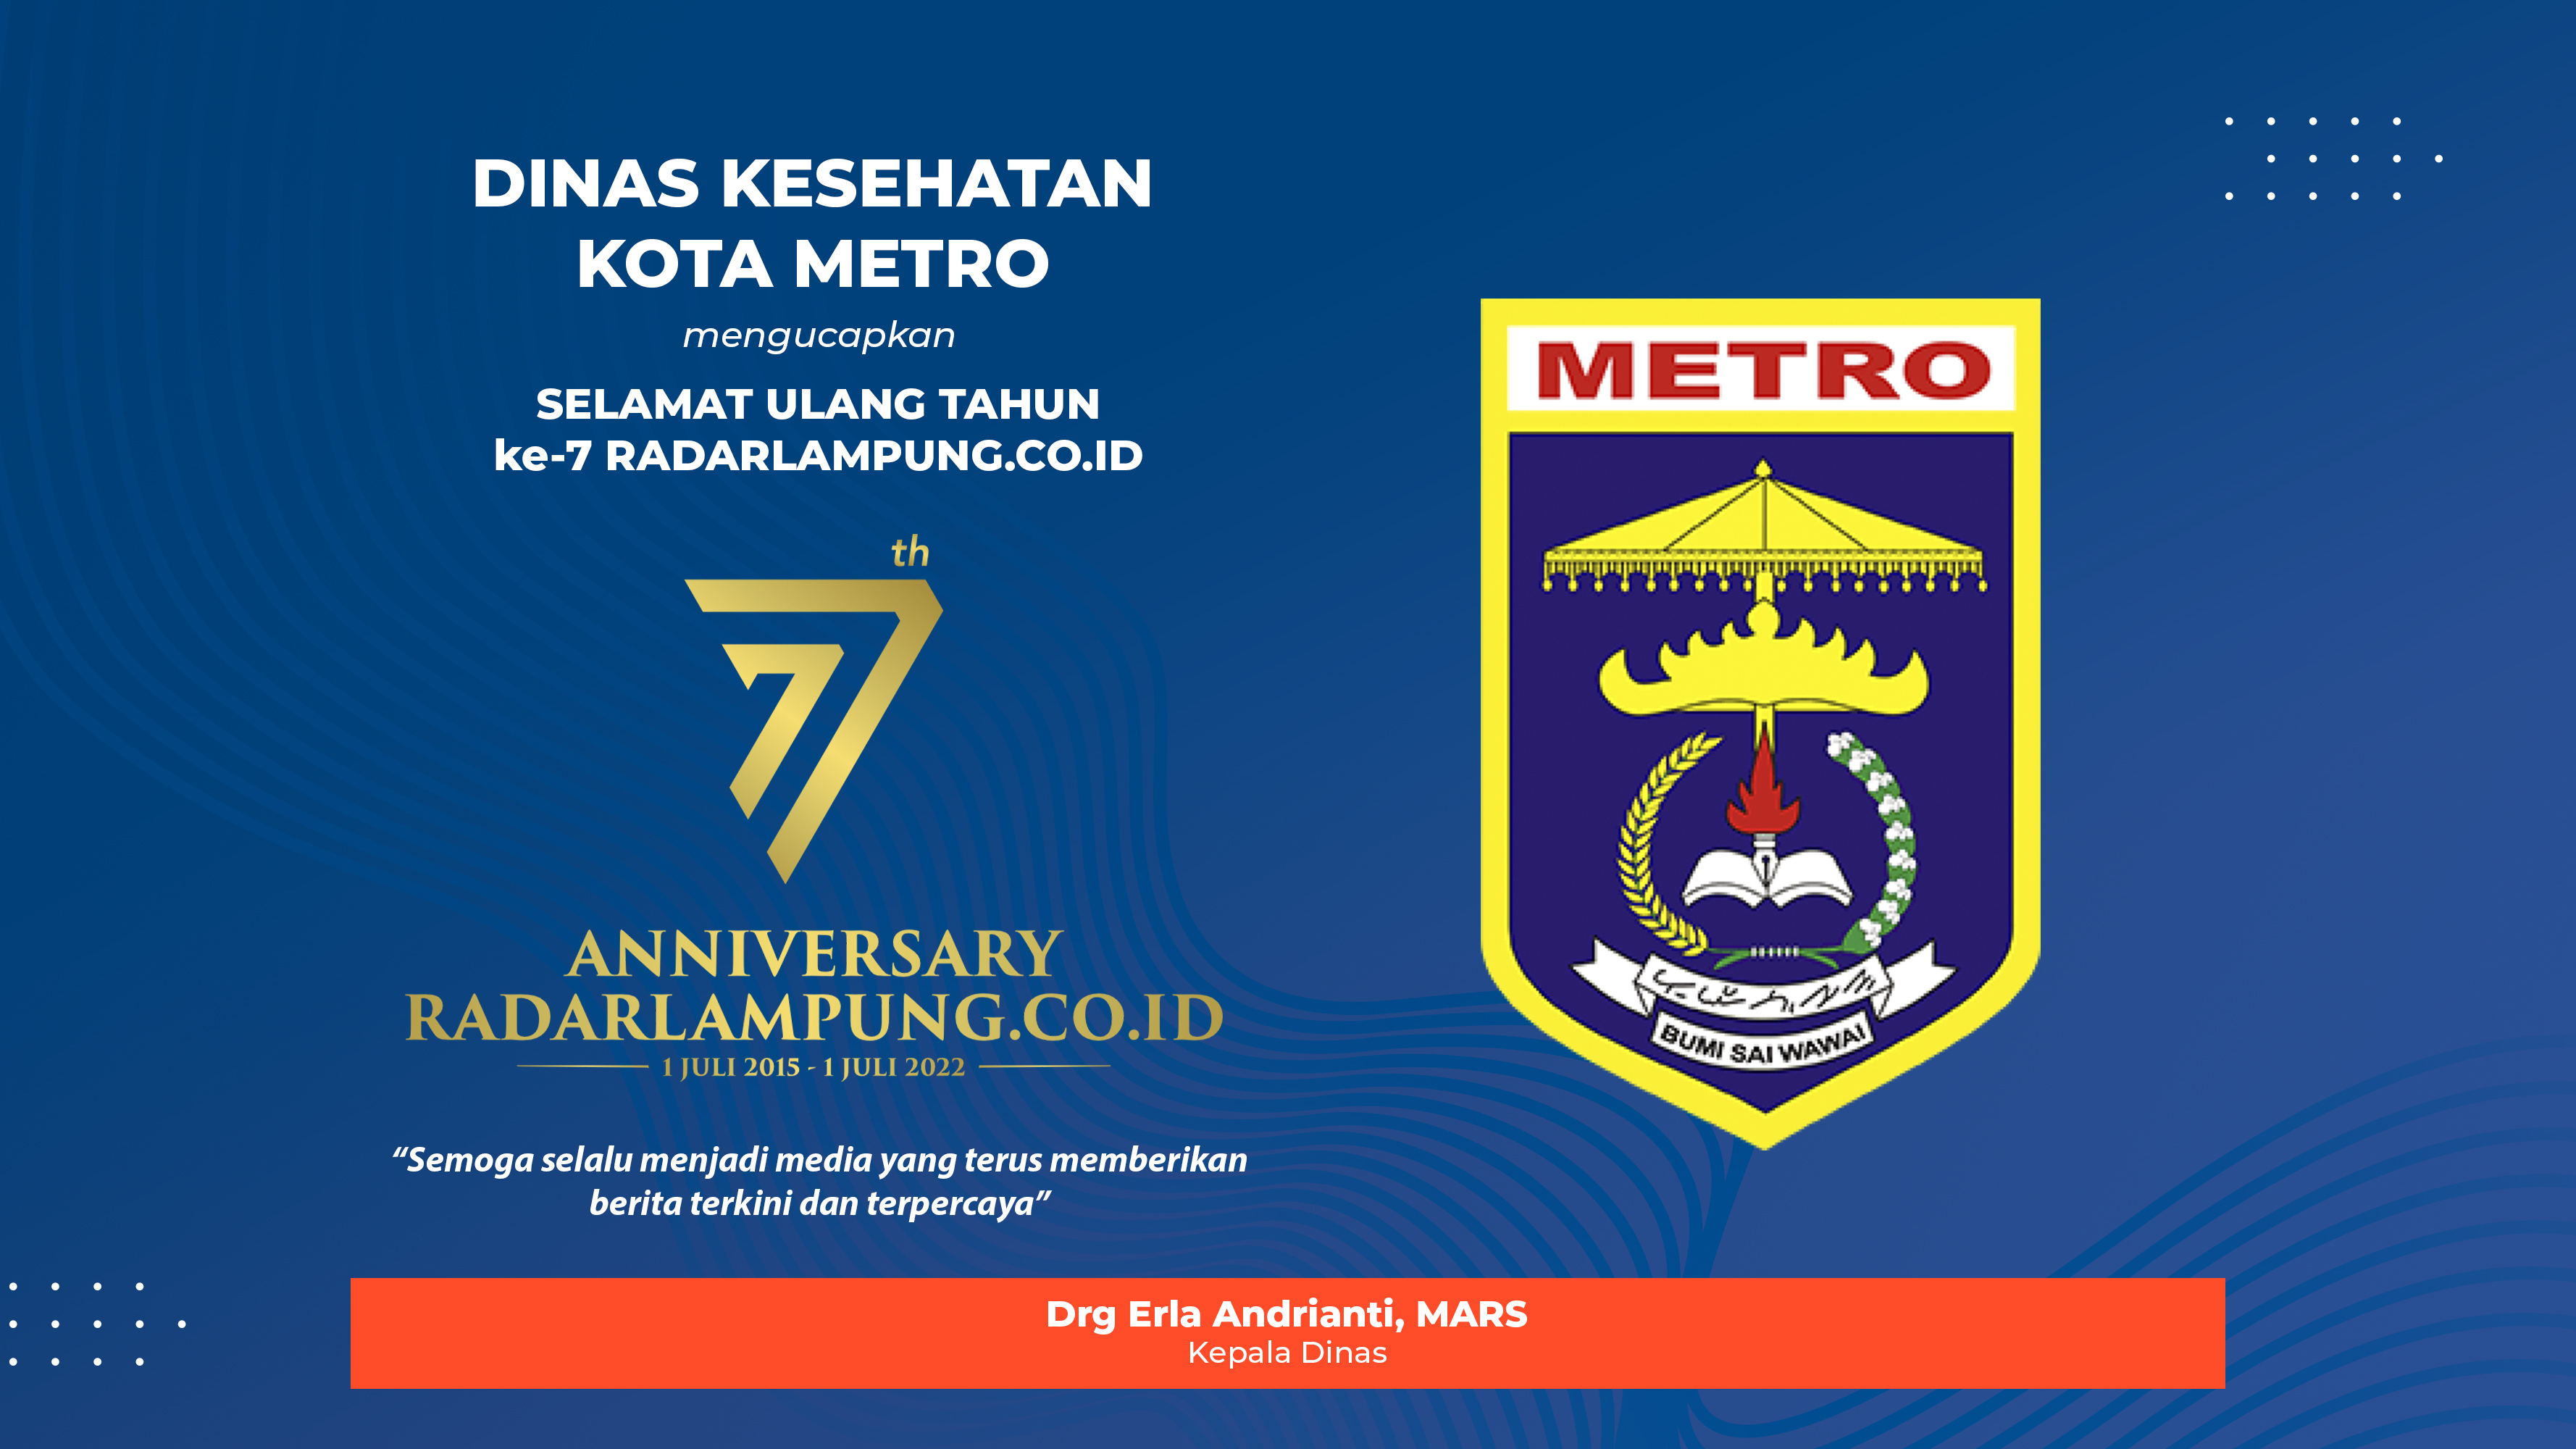 Dinas Kesehatan Kota Metro Mengucapkan Selamat Ulang Tahun ke-7 Radarlampung.co.id